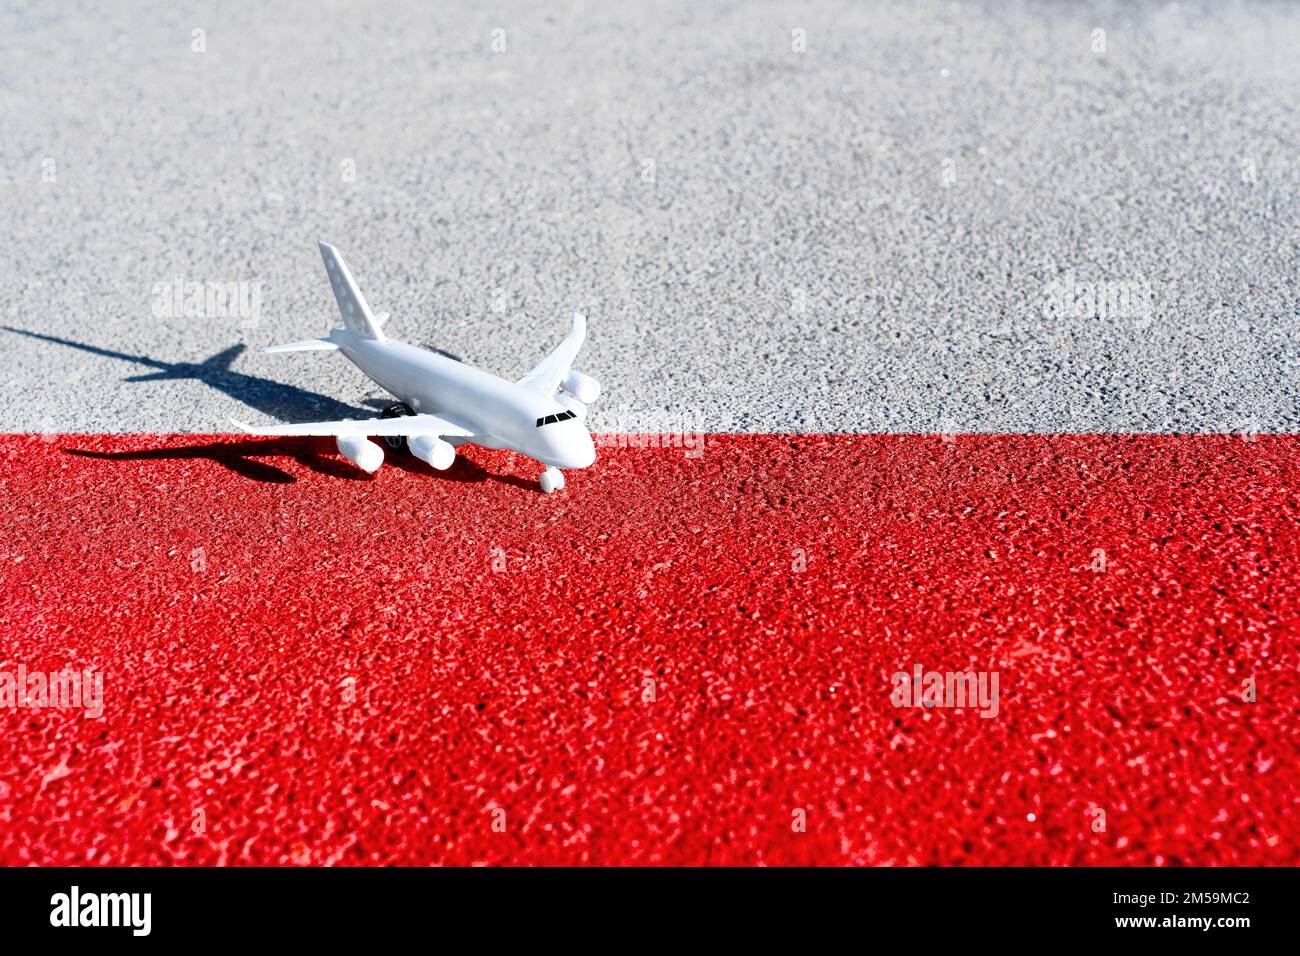 L'avion jouet placé sur la route peint les couleurs du drapeau national de la Pologne. Banque D'Images